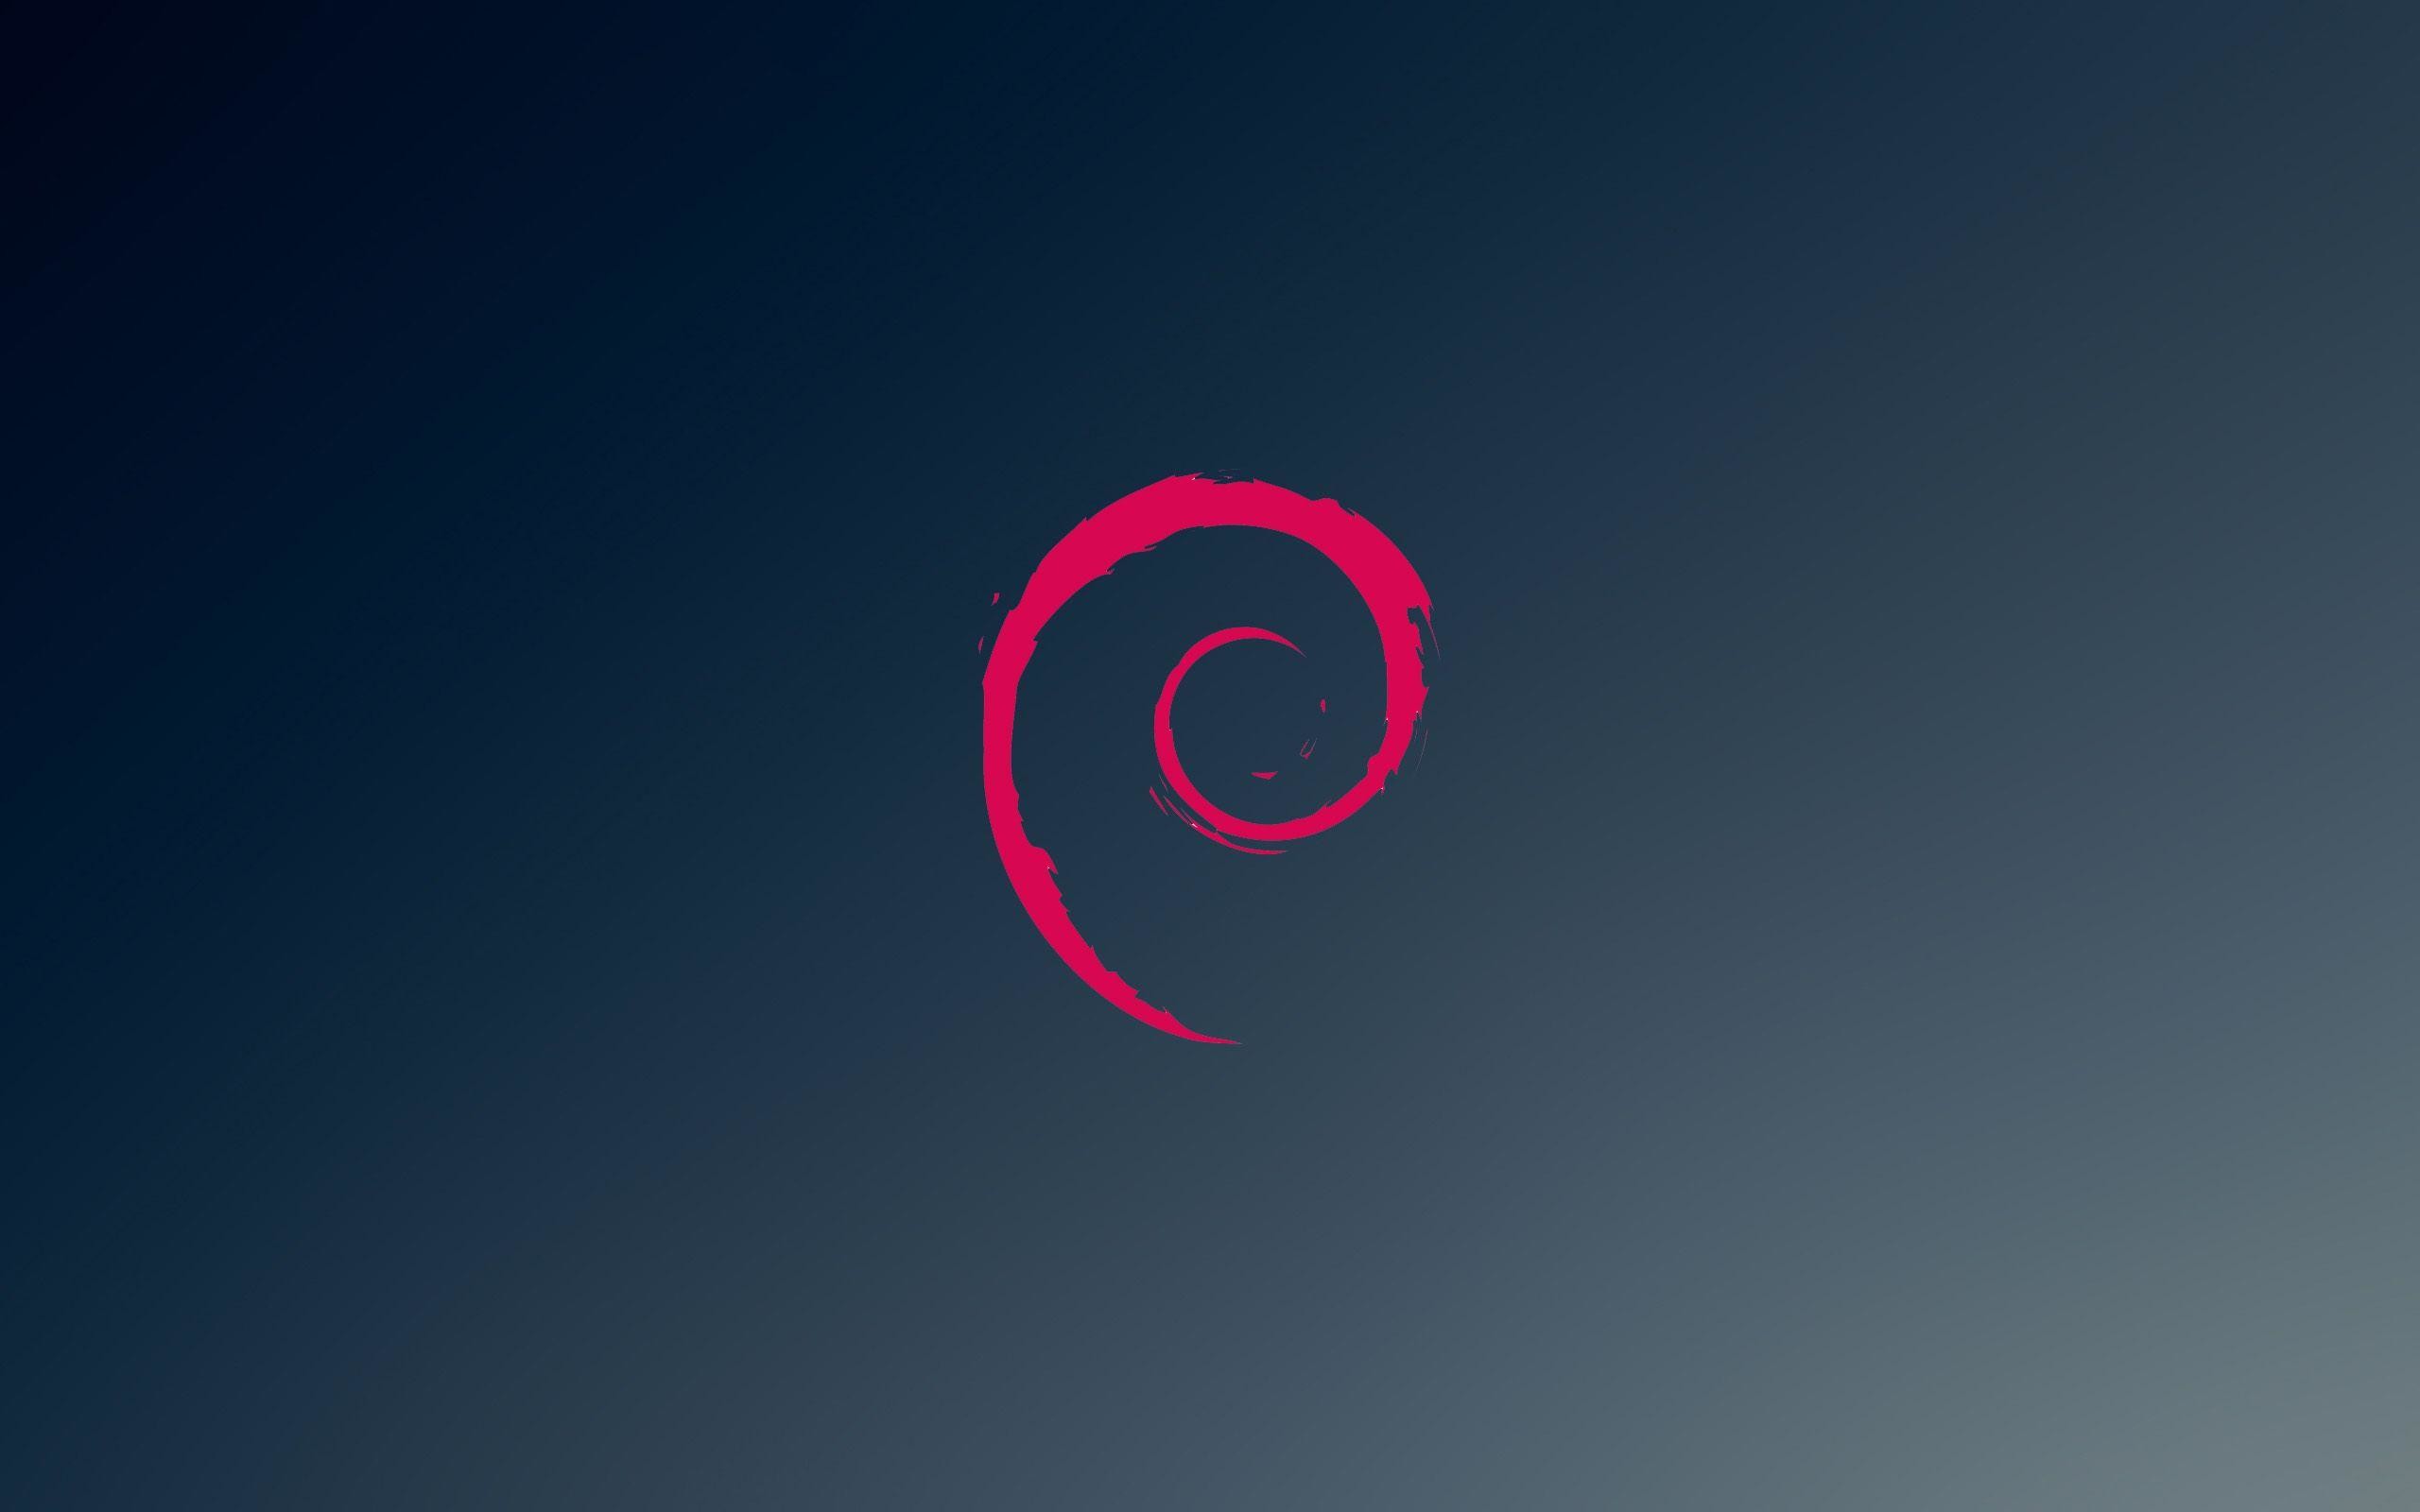 Installer un serveur TFTP sous Debian/Ubuntu | Sauvegarde d’Ã©quipements Cisco